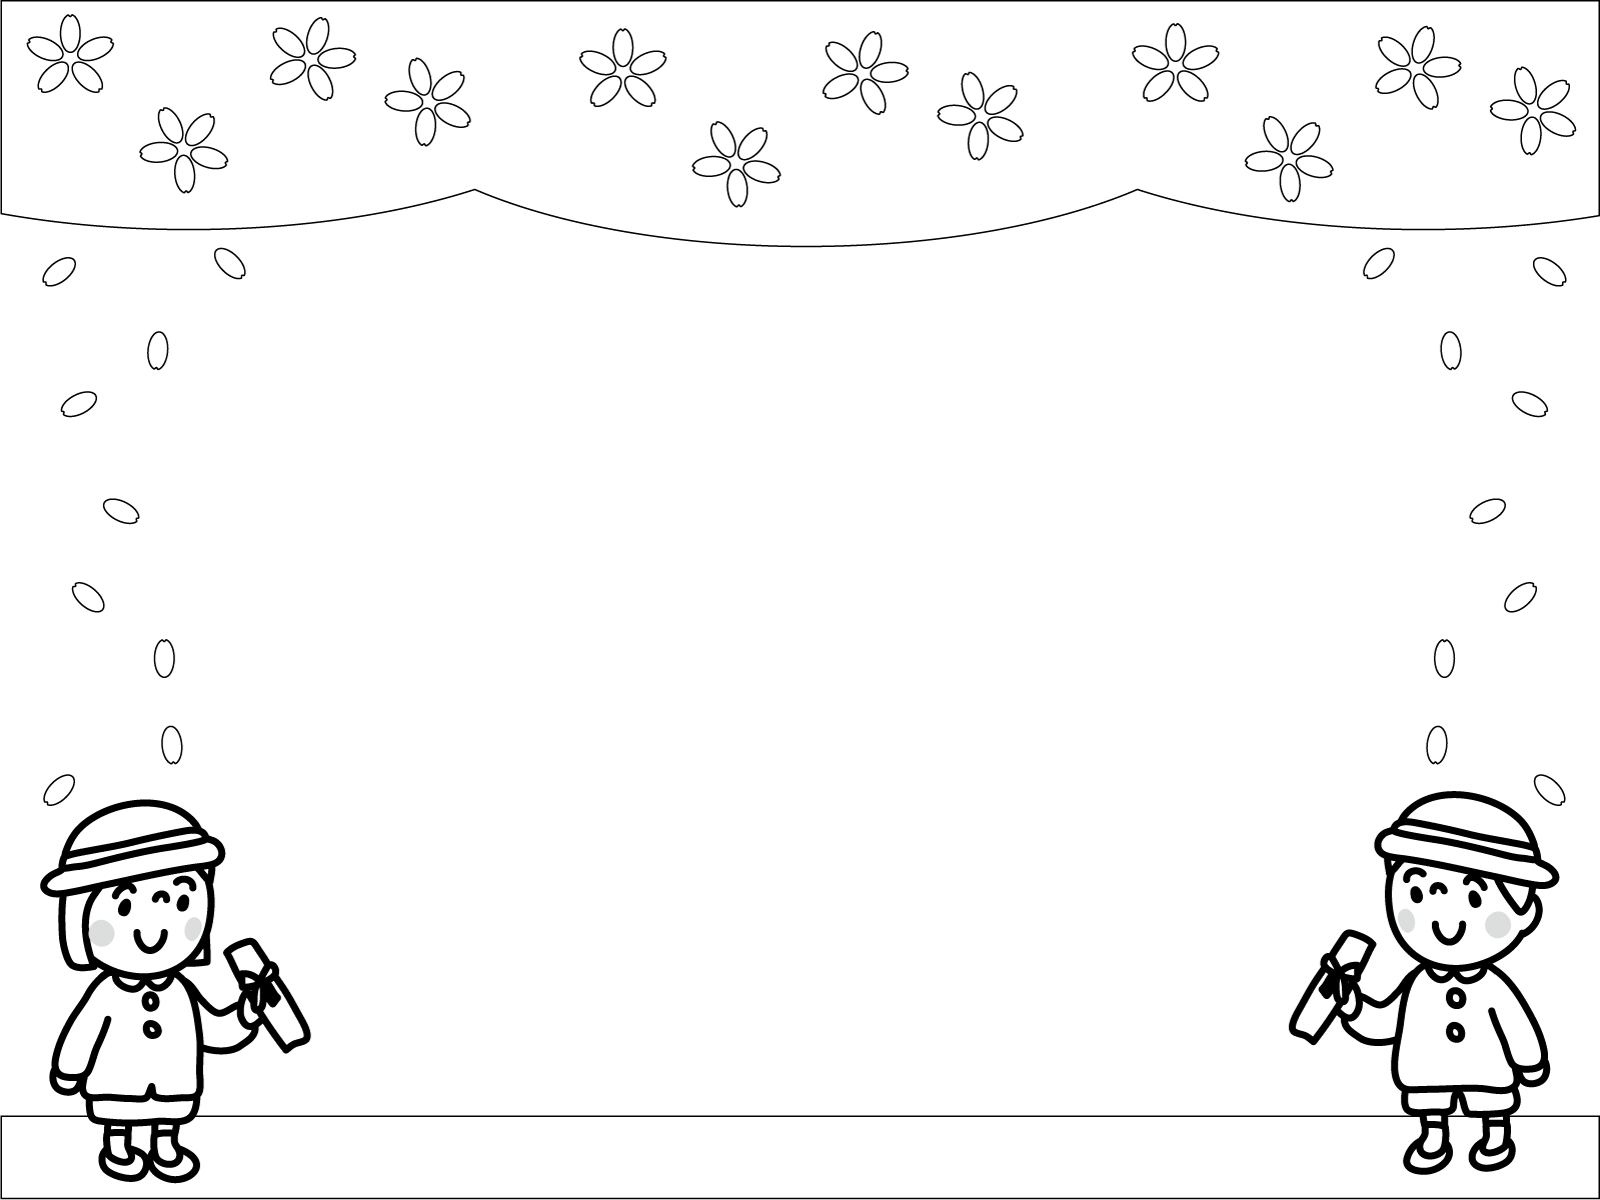 1000以上 幼稚園 イラスト 枠 白黒 無料の花の画像